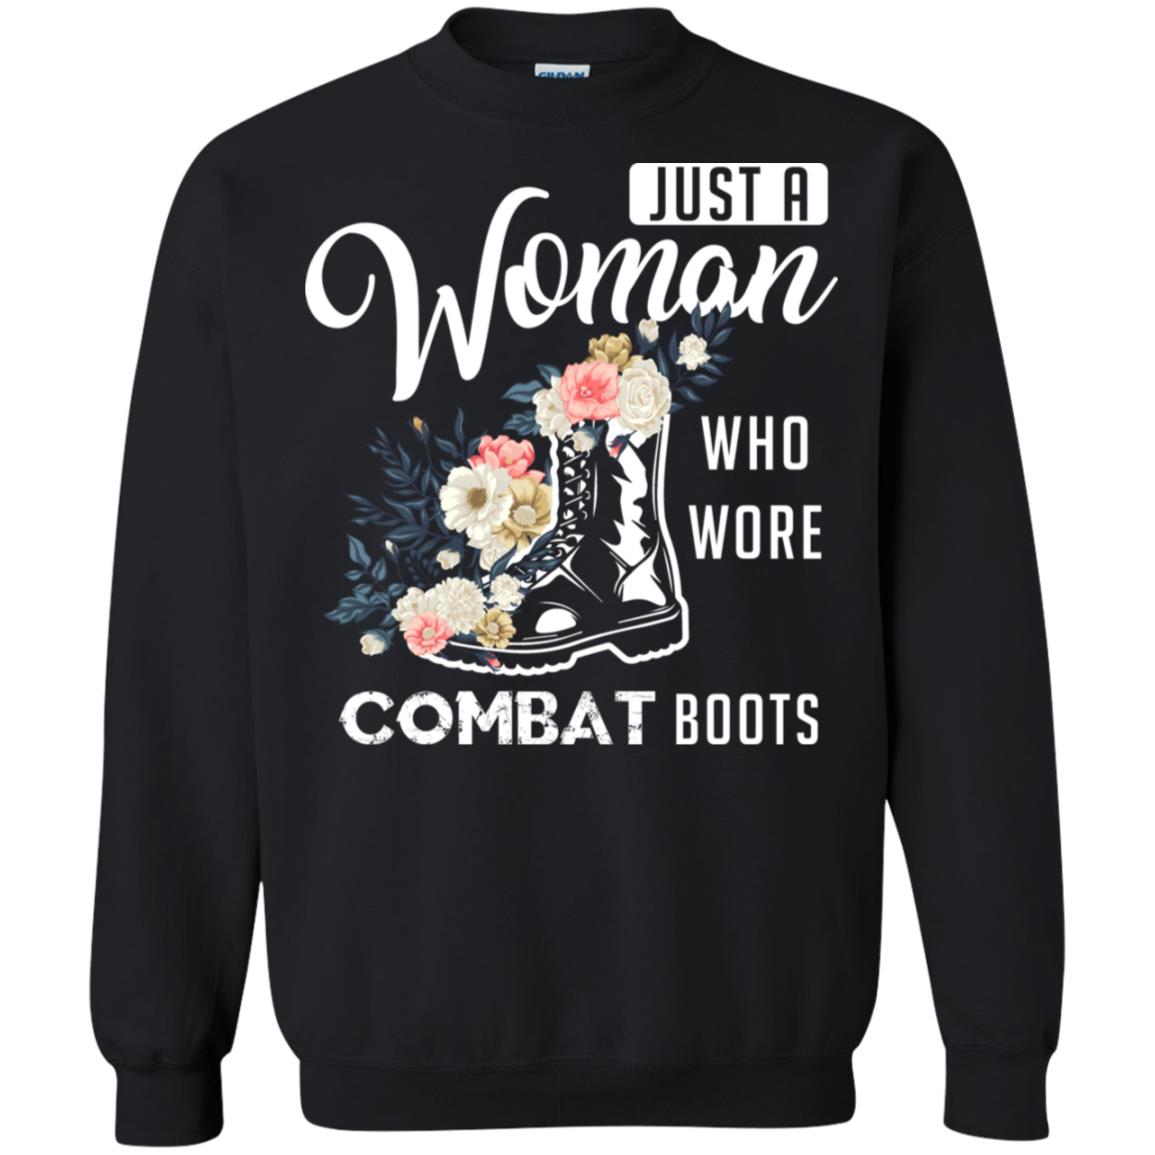 Just A Woman Who More Combat Boots Female Veteran T-shirtG180 Gildan Crewneck Pullover Sweatshirt 8 oz.